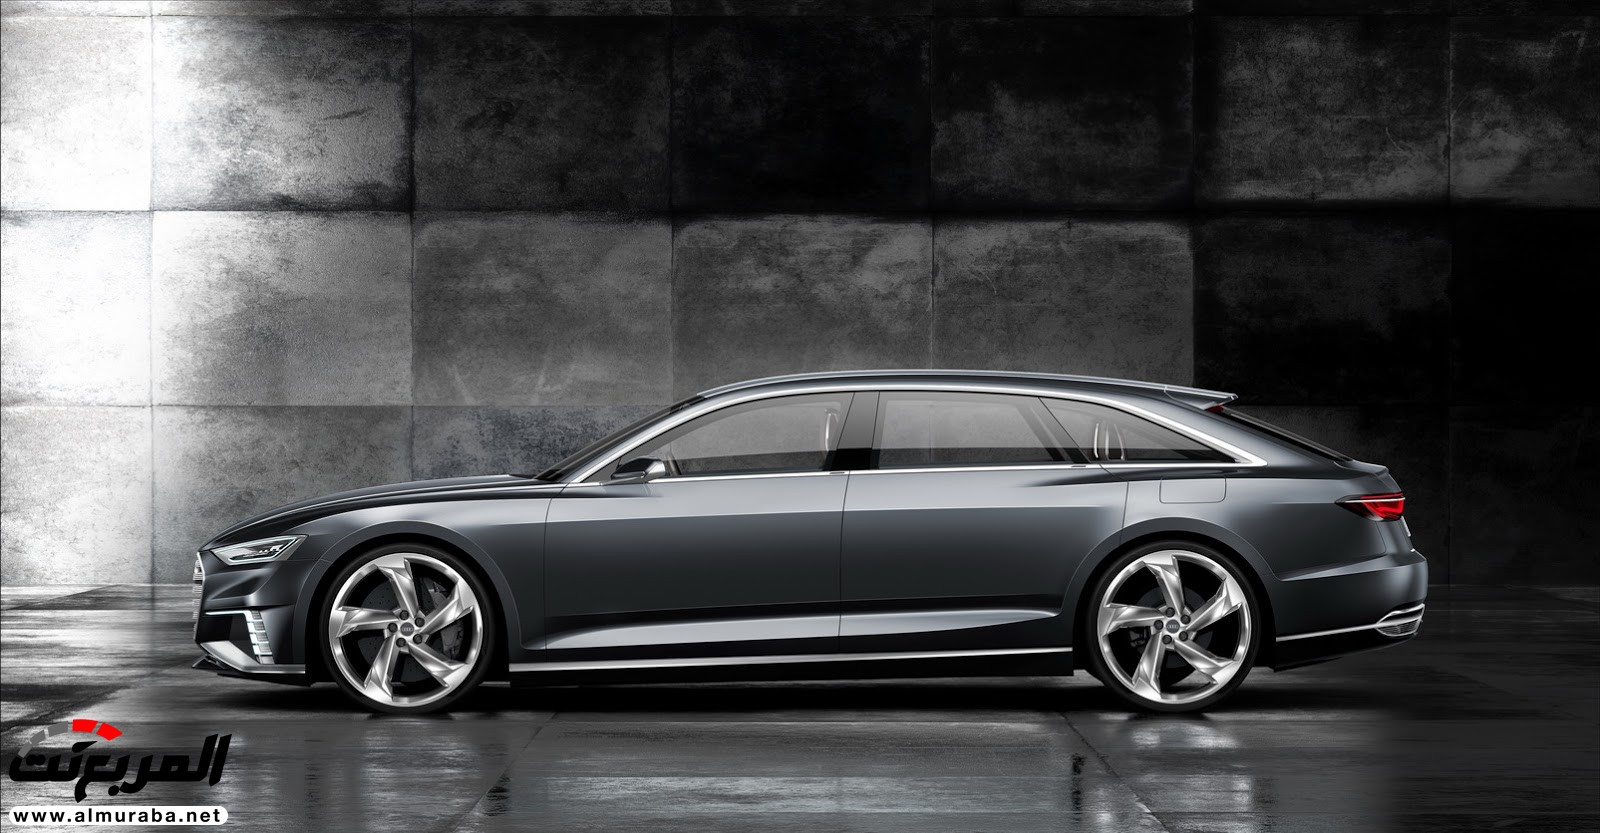 "أودي" A6 الجيل القادم 2019 سيتغير شكلها جذريا وسيتم تدشينها خلال العام المقبل Audi 4